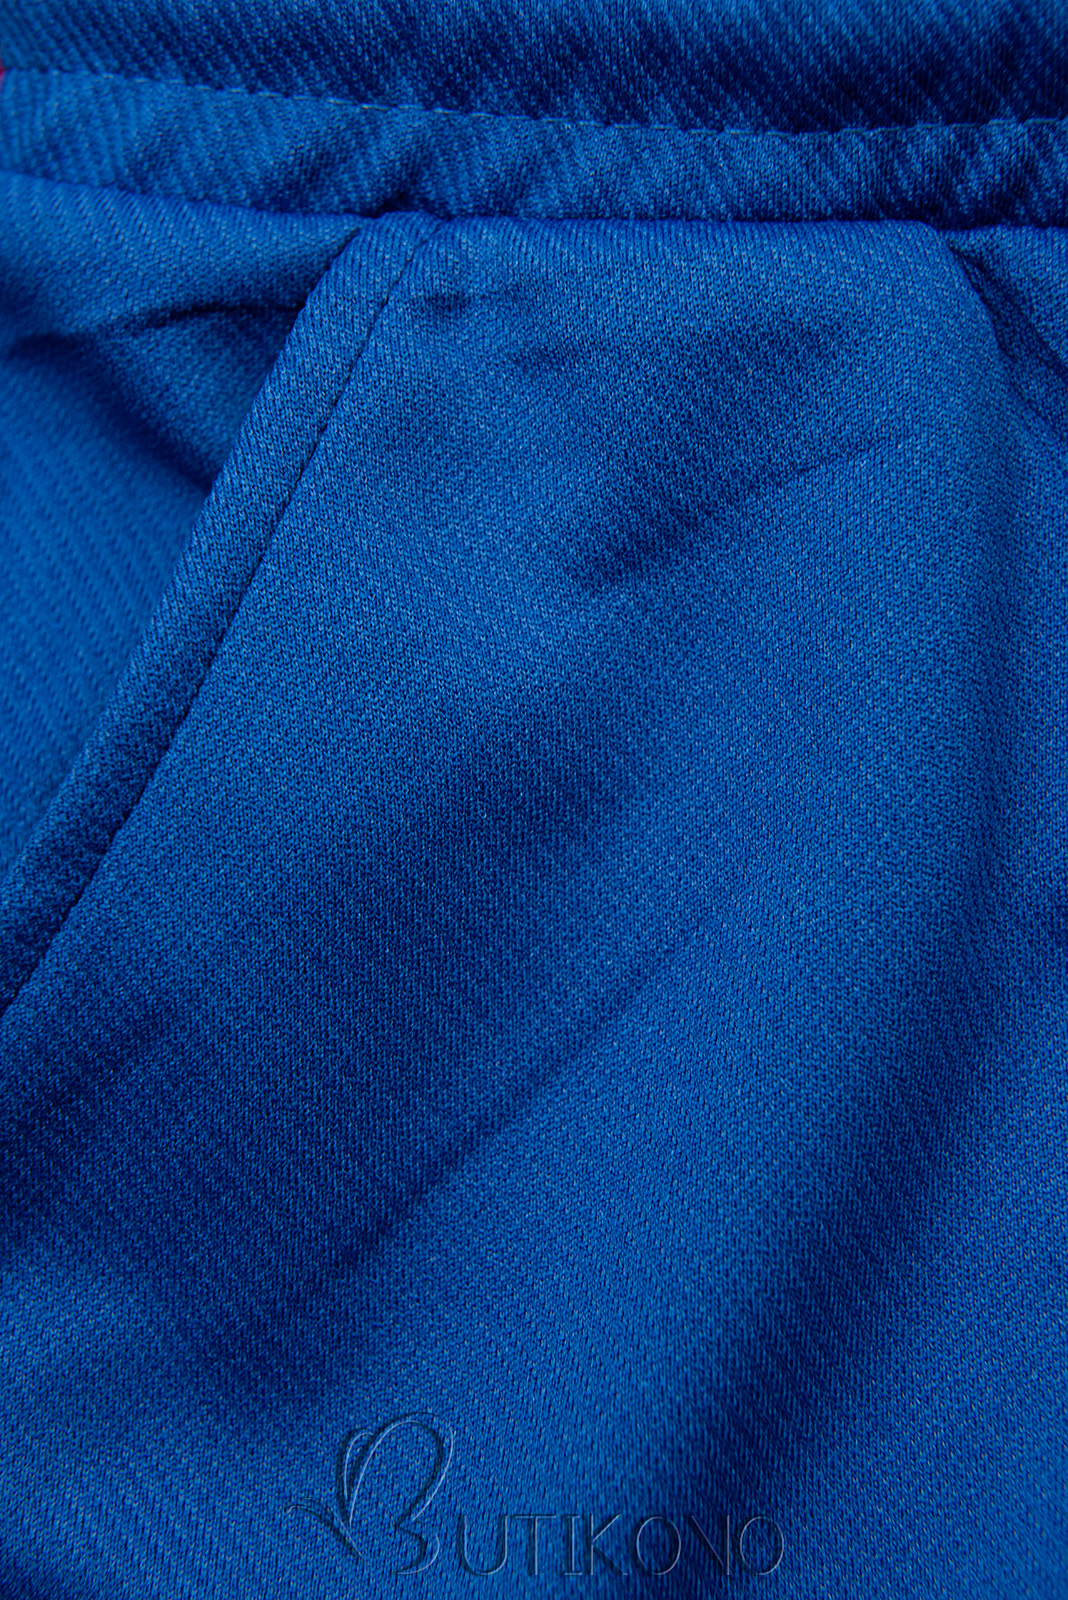 Kobaltovomodré športové nohavice s vreckami